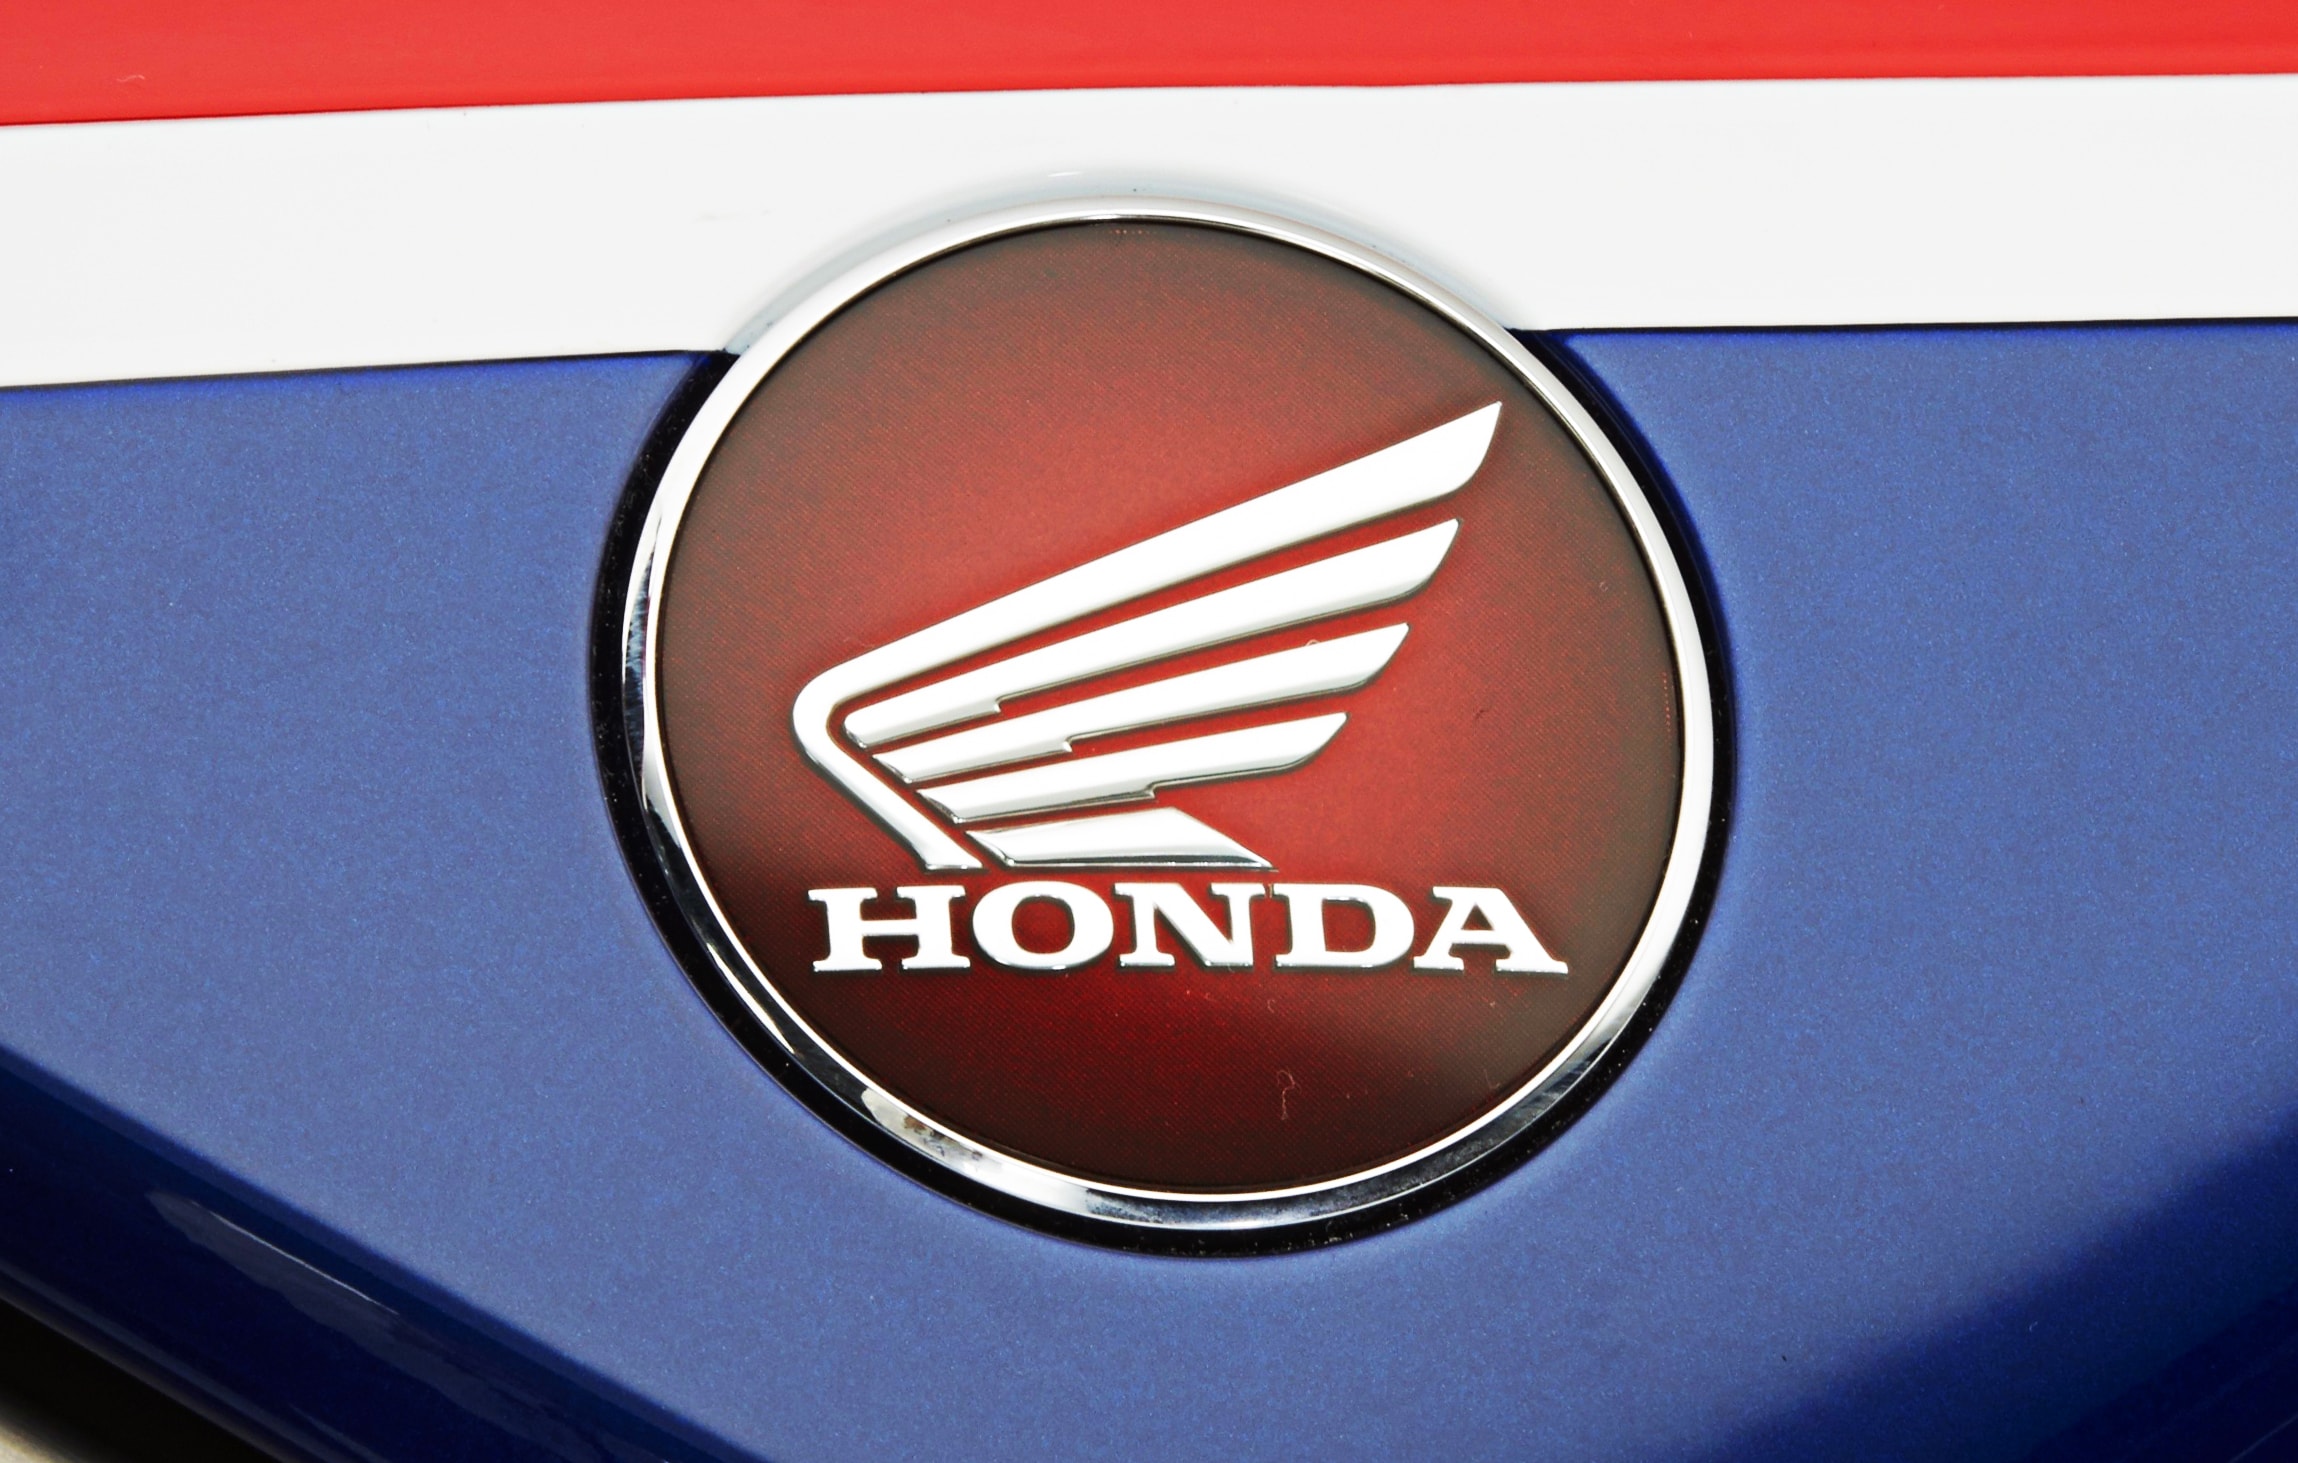 honda motorcycle logos free download 32868